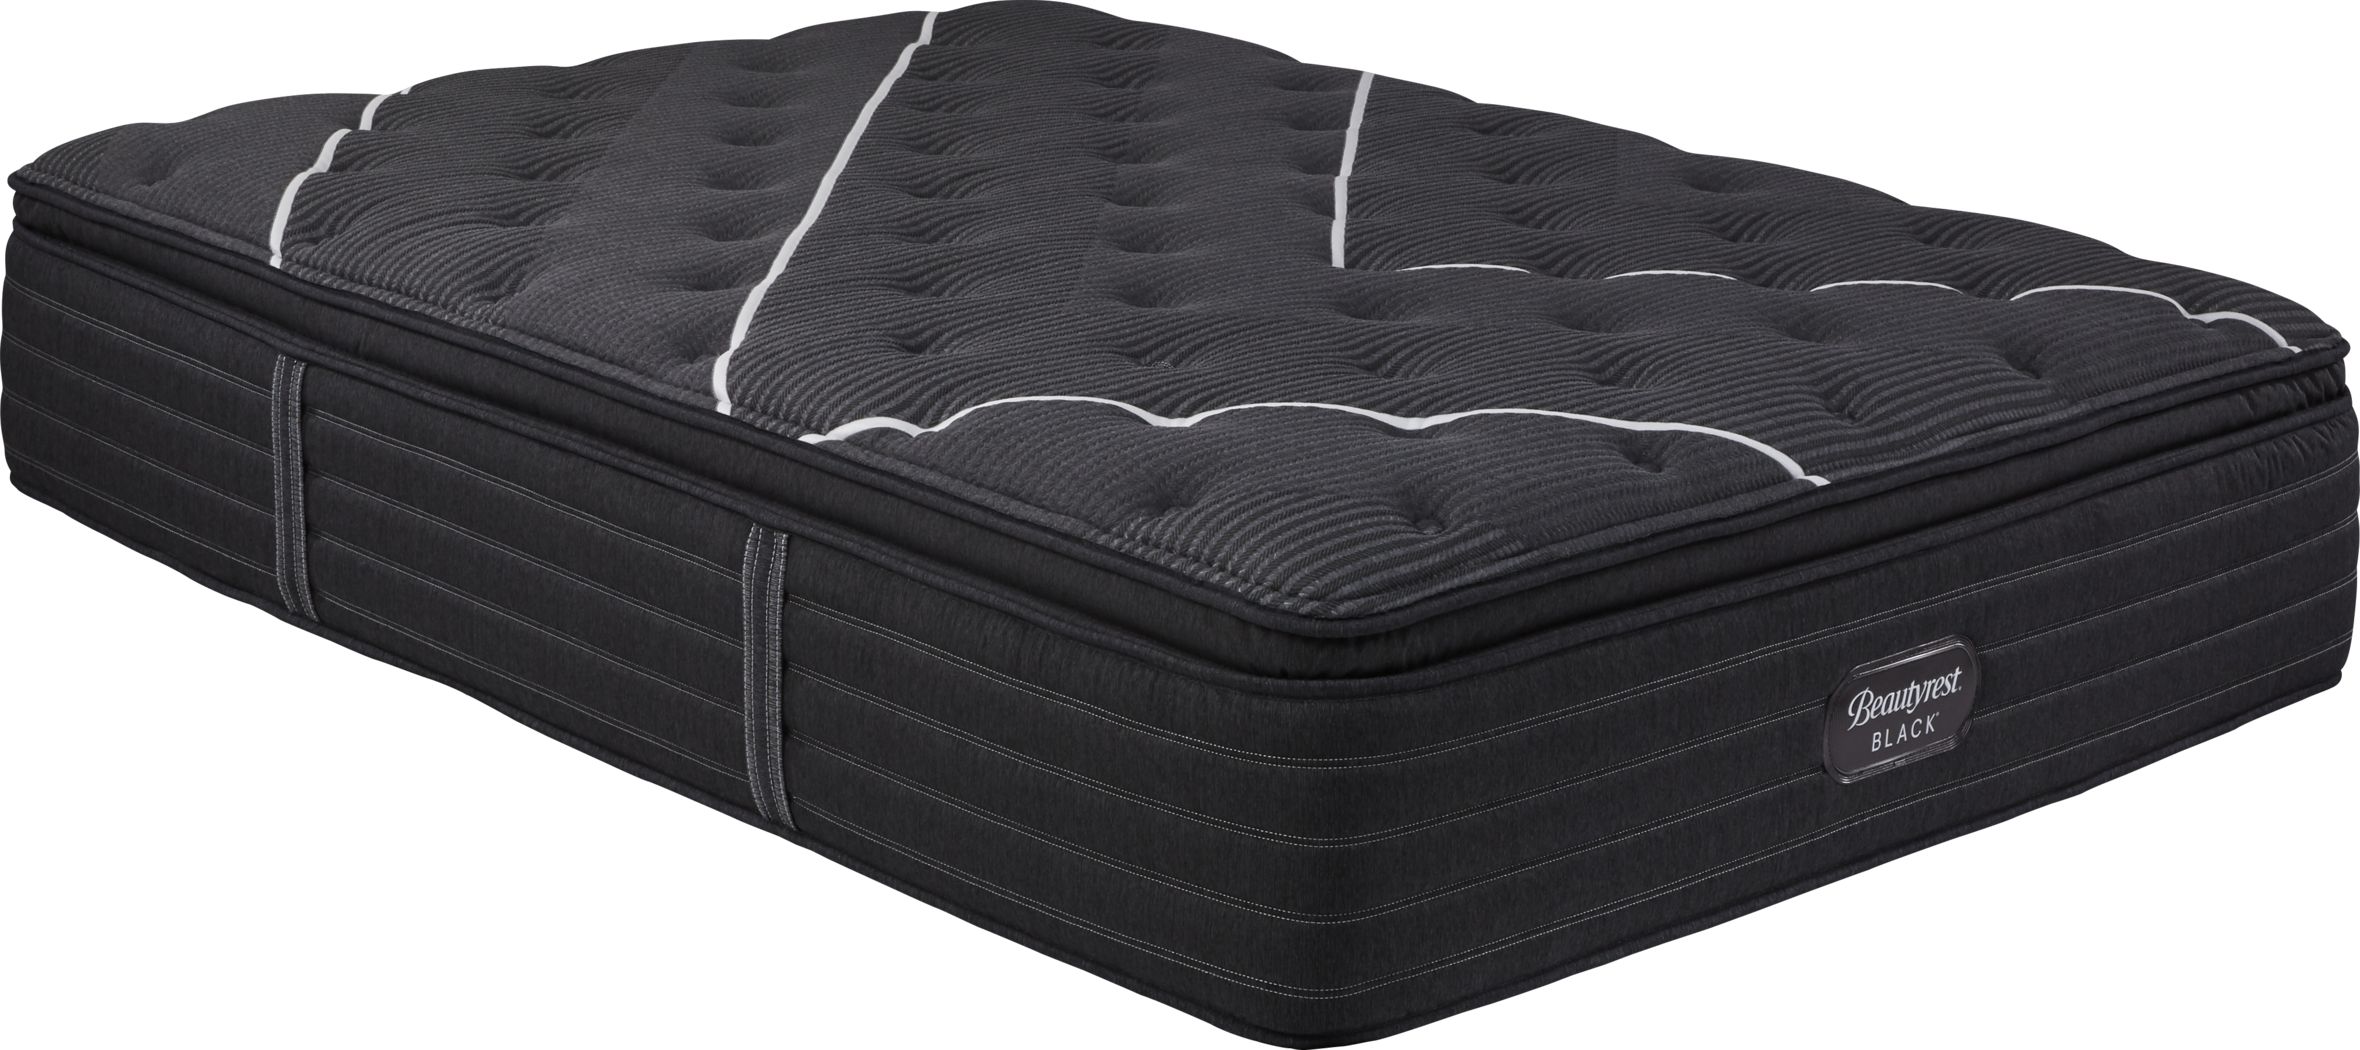 black pillow top queen mattress